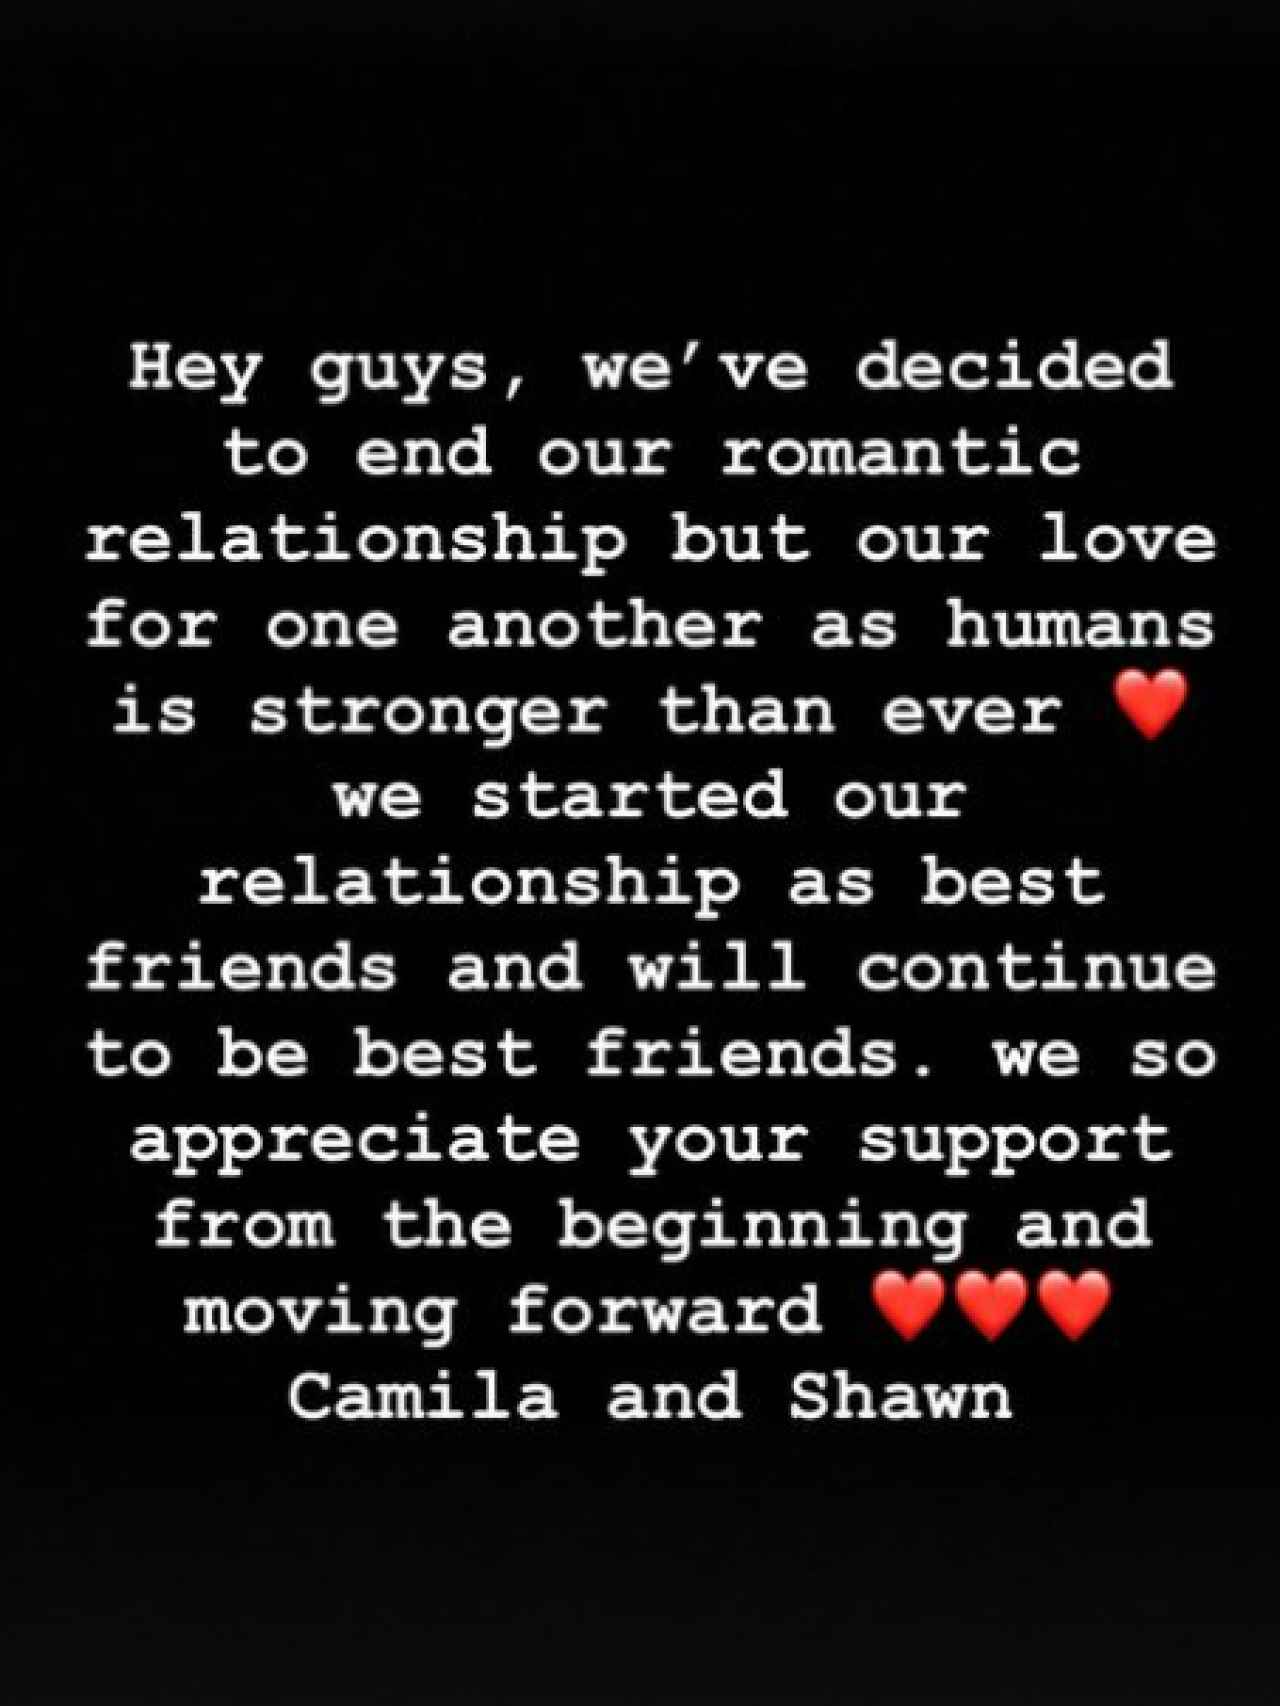 El comunicado de Camila Cabello y Shawn Mendes.